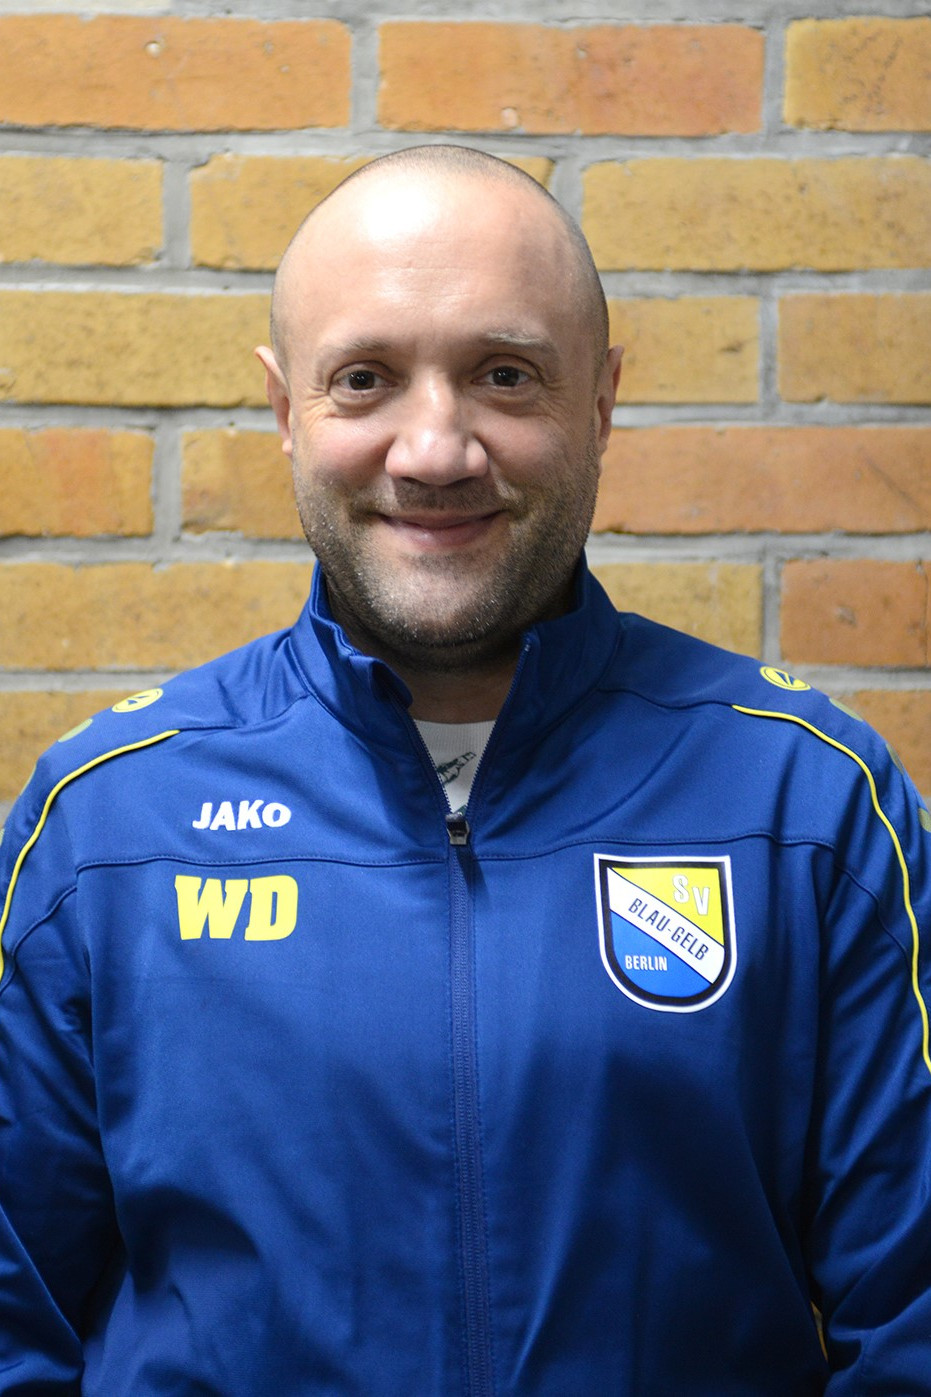 Wojciech Dziedzic